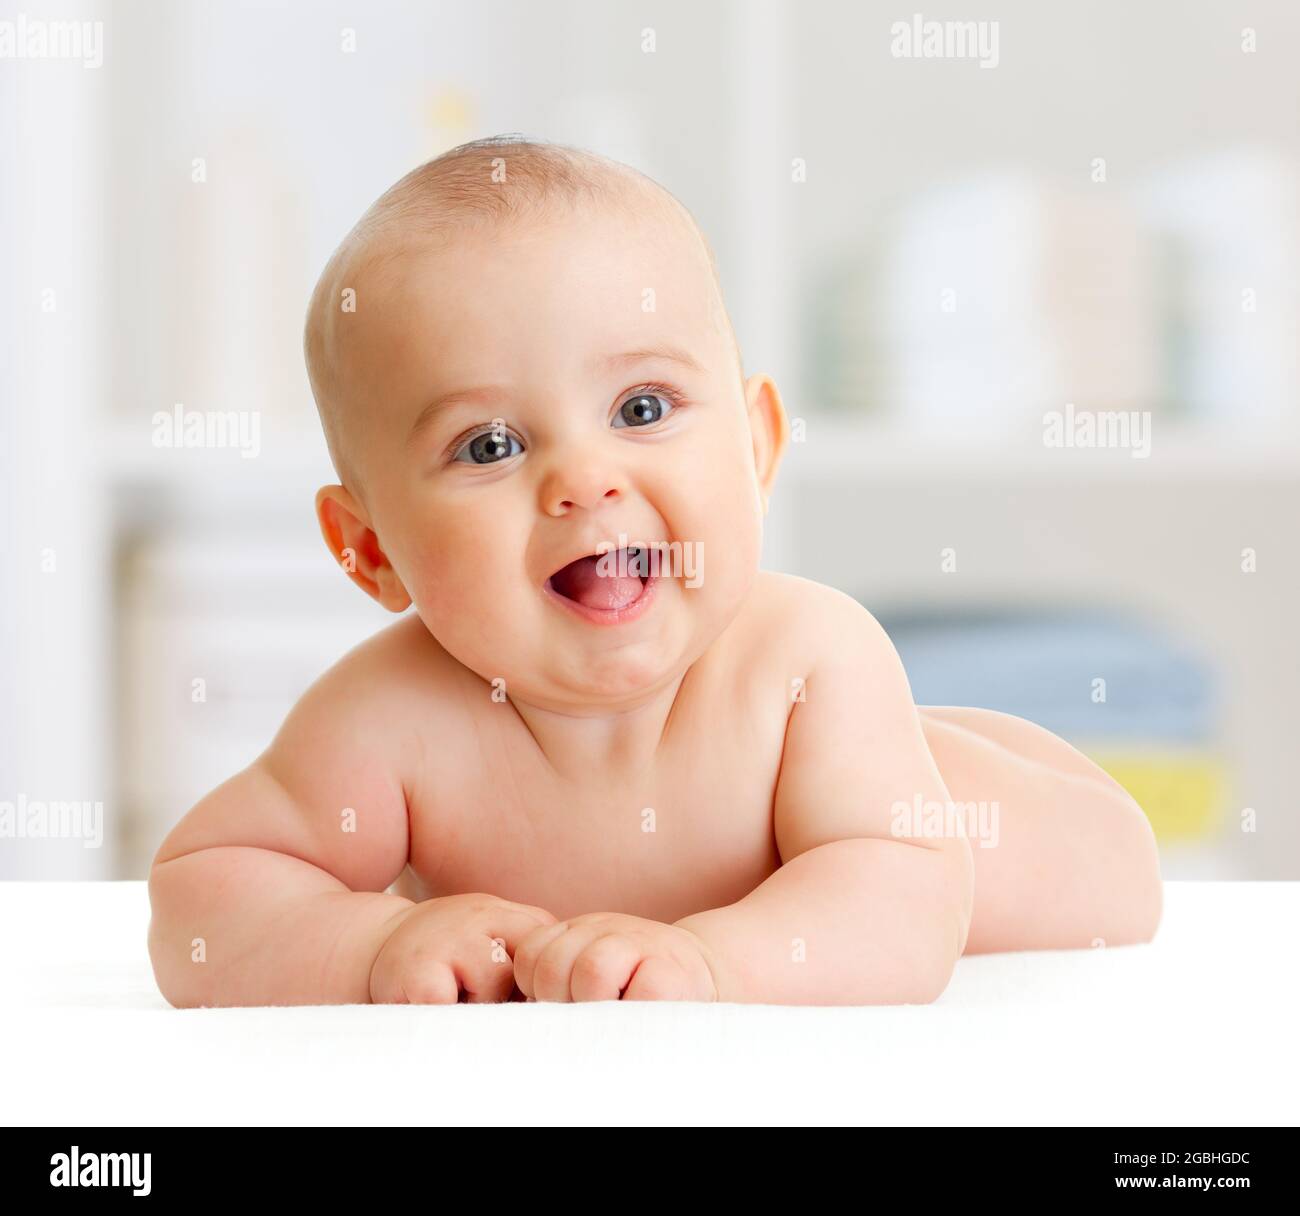 Adorable bebé sonriente tumbado en la habitación Foto de stock